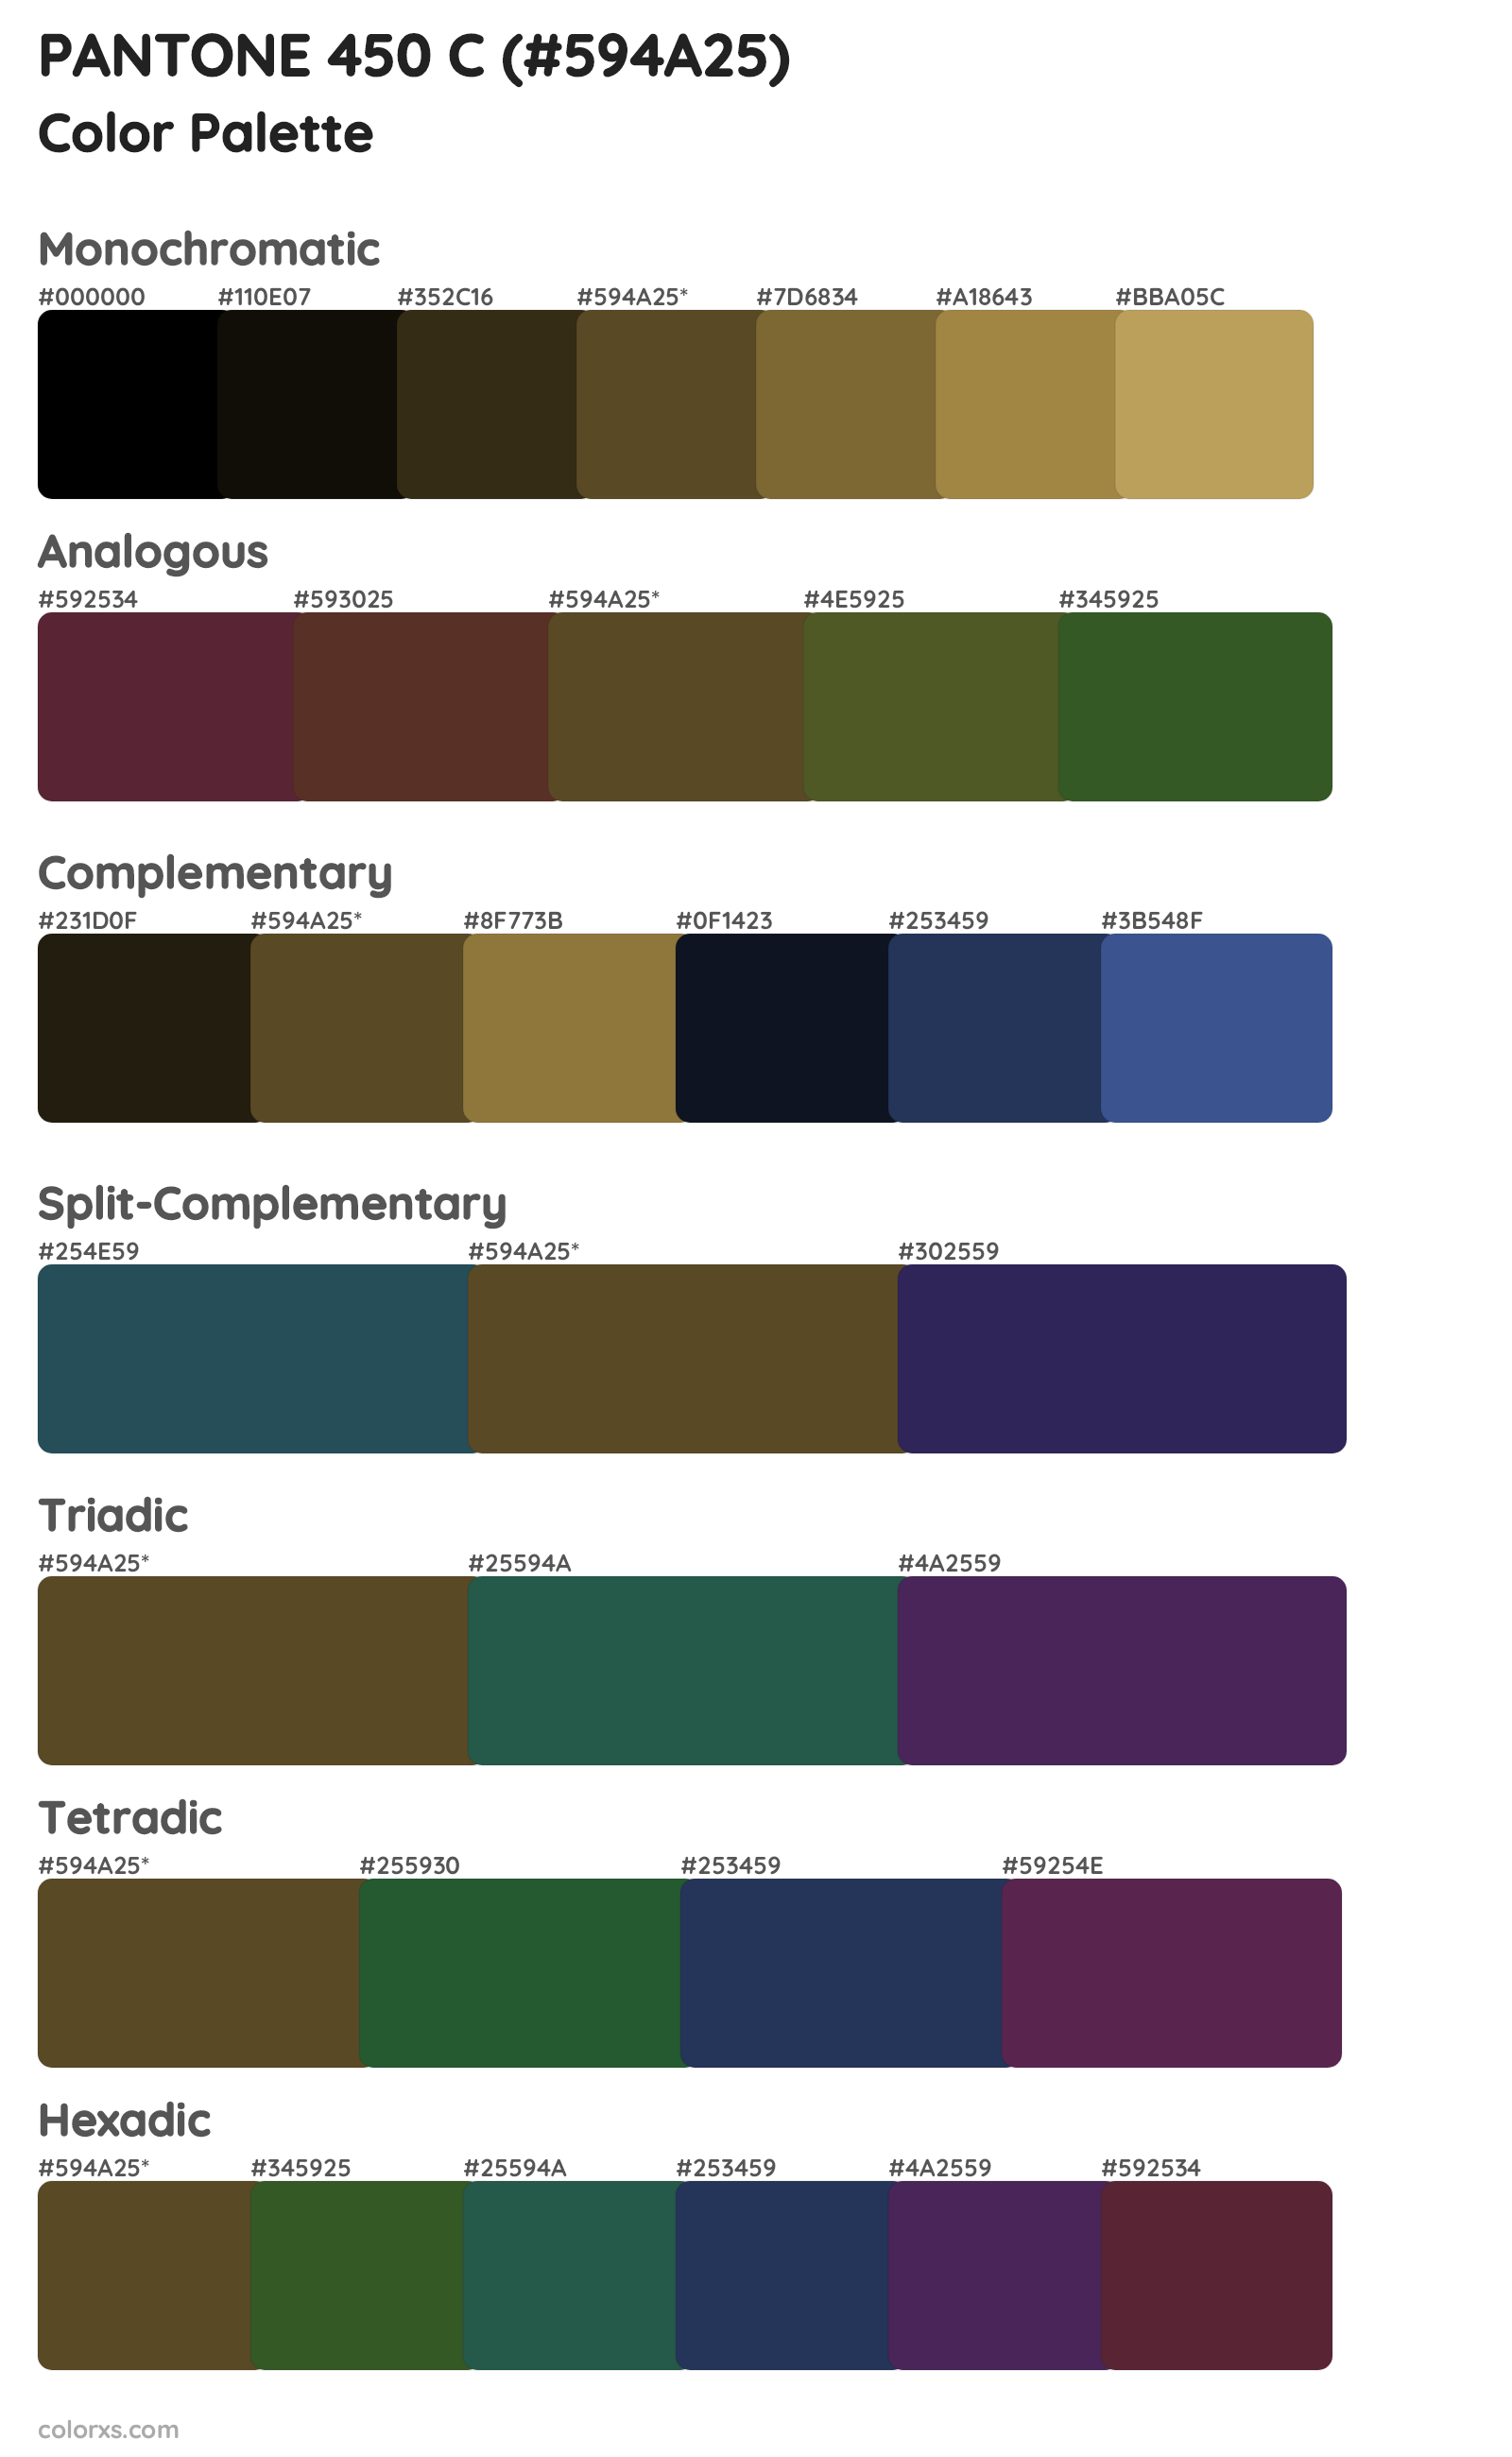 PANTONE 450 C Color Scheme Palettes